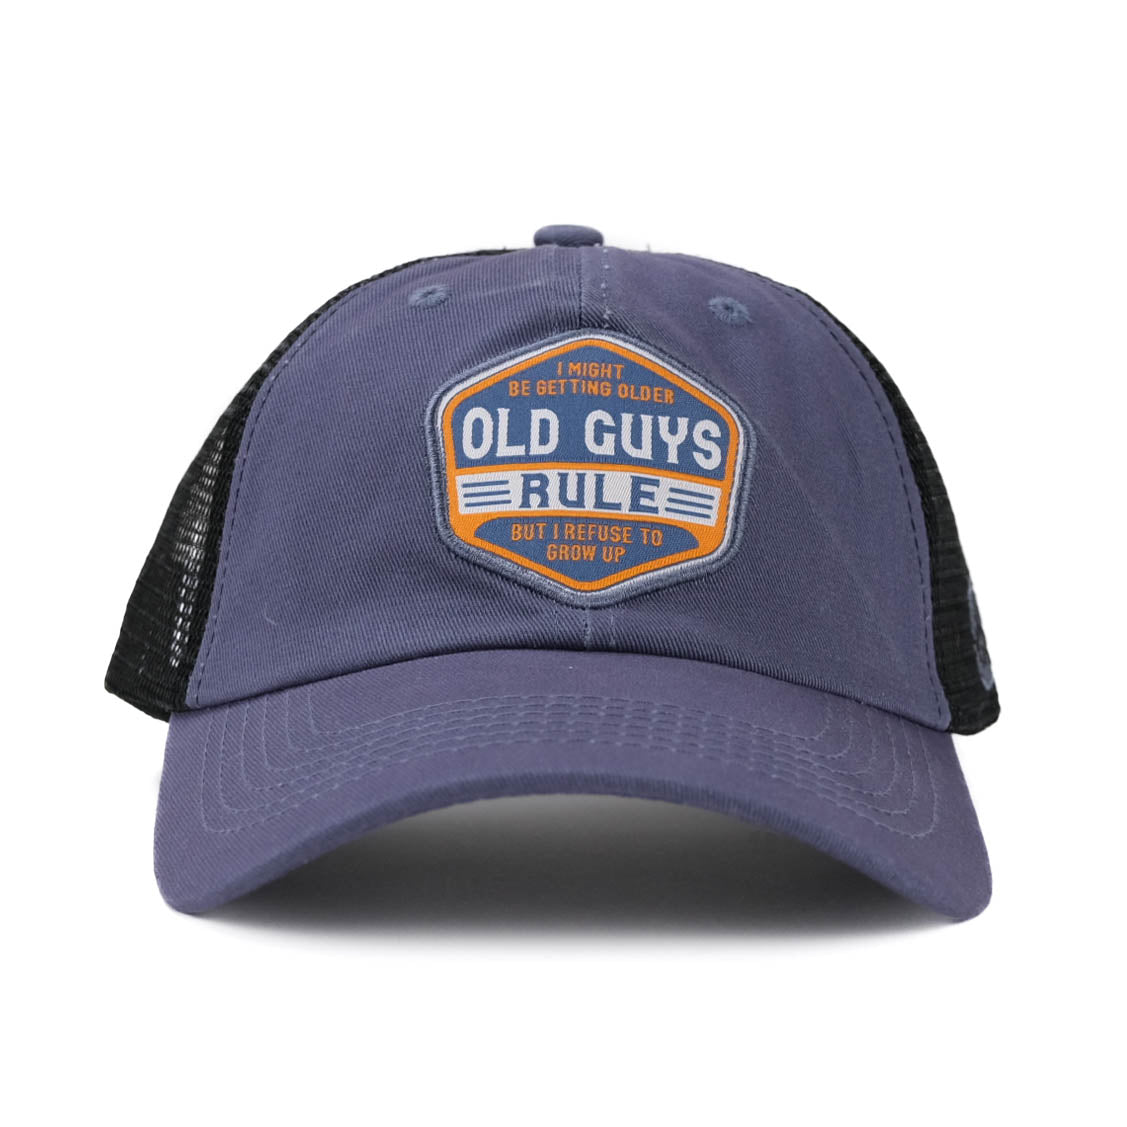 OGR Lids - Vintage Trucker Hats - Getting Older